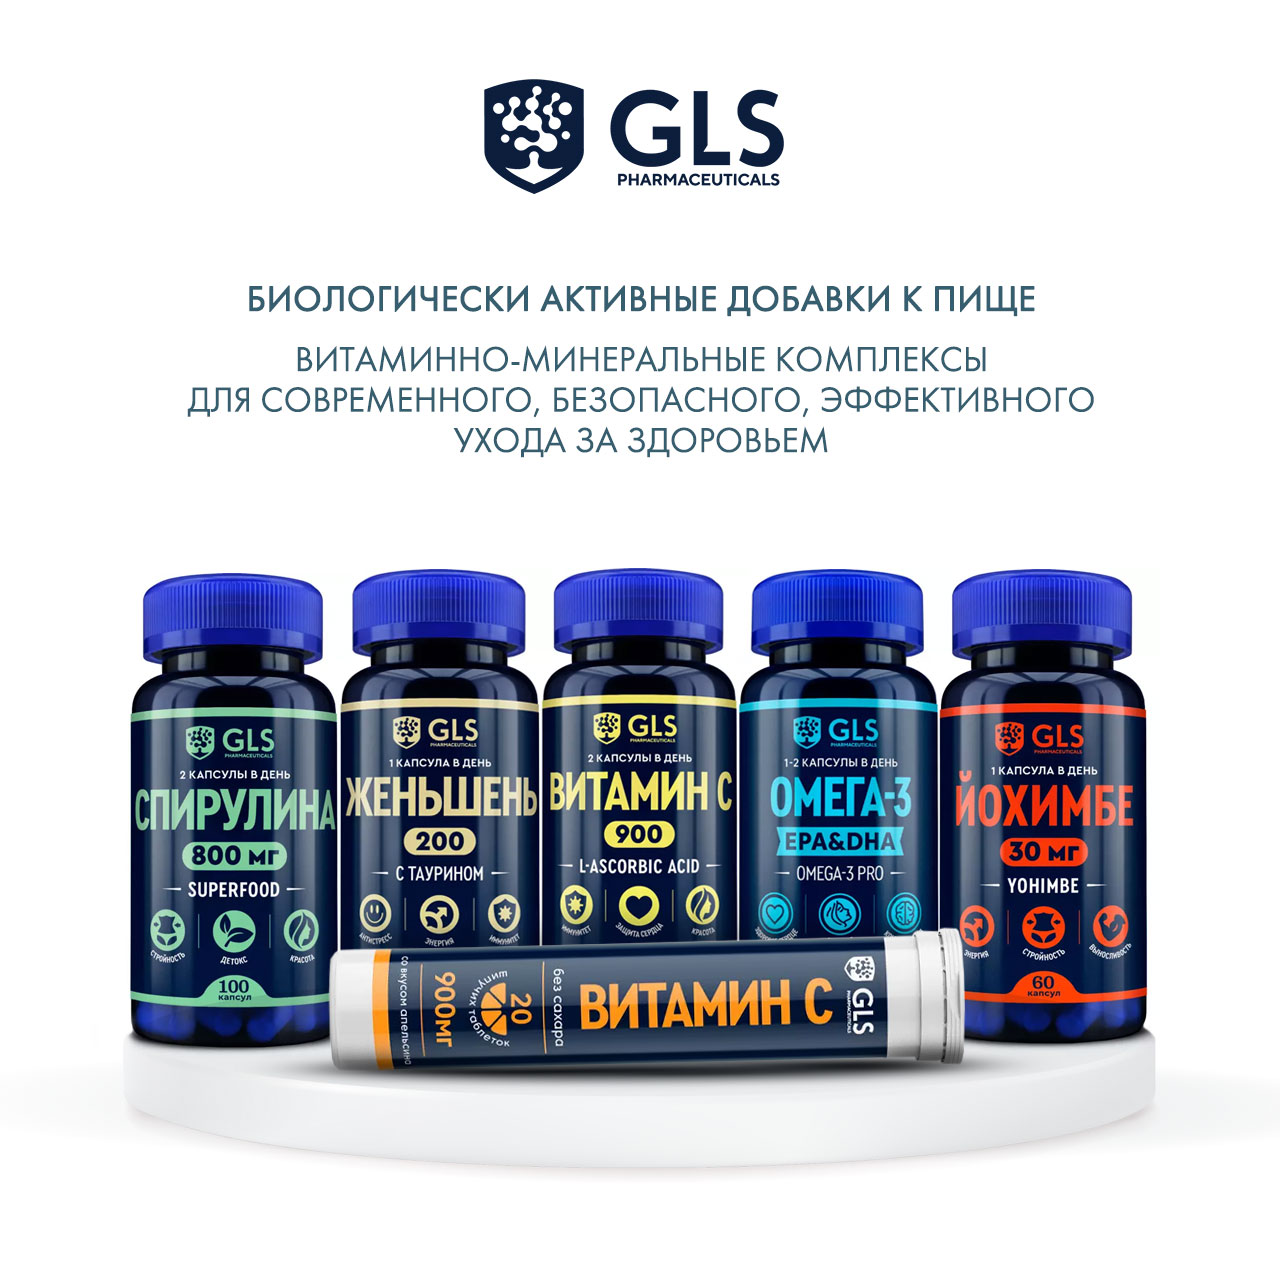 Витамины gls отзывы врачей. GLS витамины. Витамины в комплекс GLS. Йохимбе GLS. GLS таблетки.